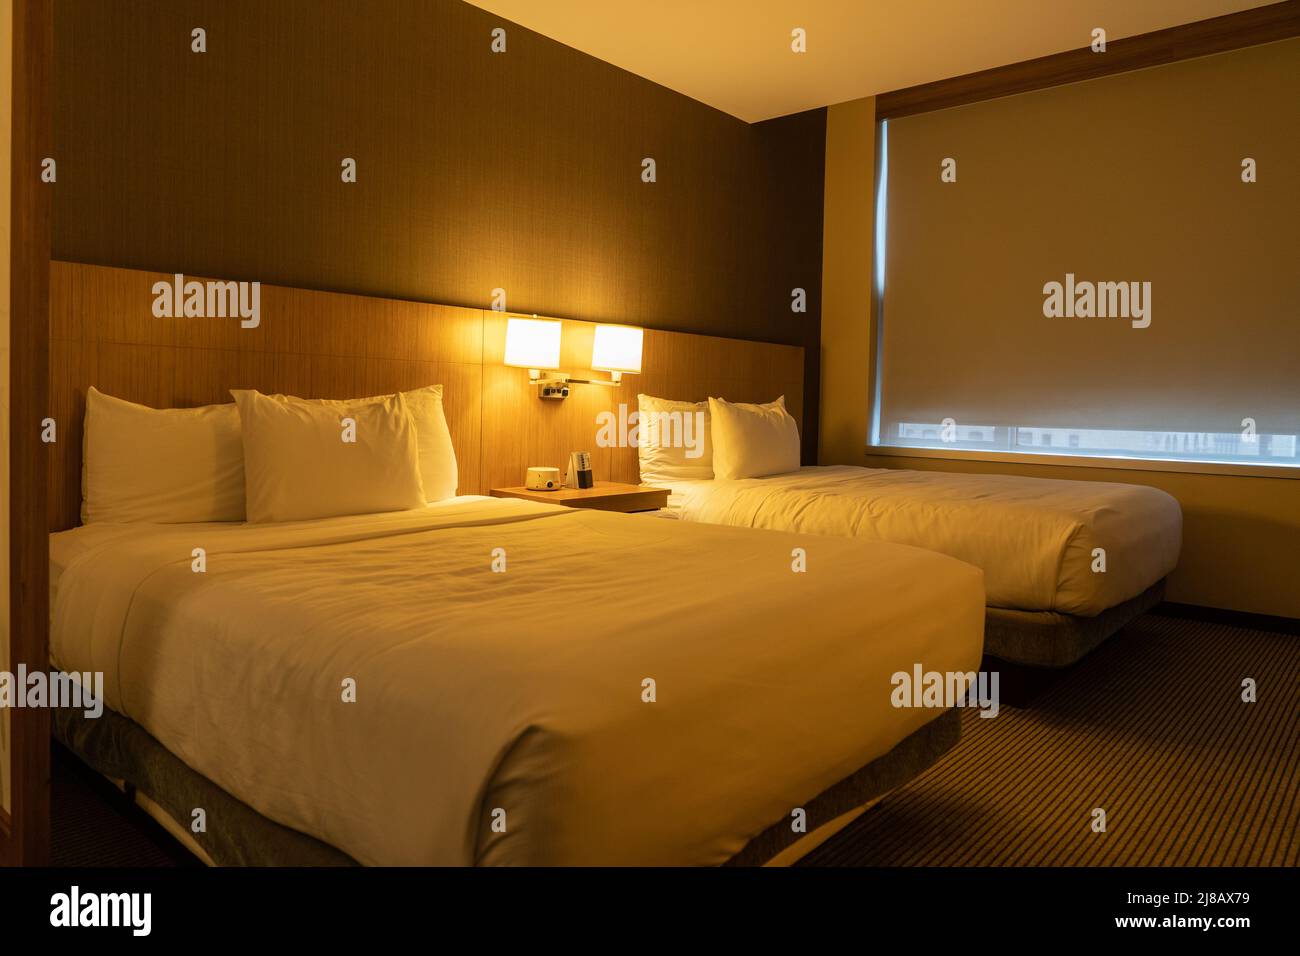 El interior del dormitorio del hotel tiene dos camas de matrimonio grandes Foto de stock